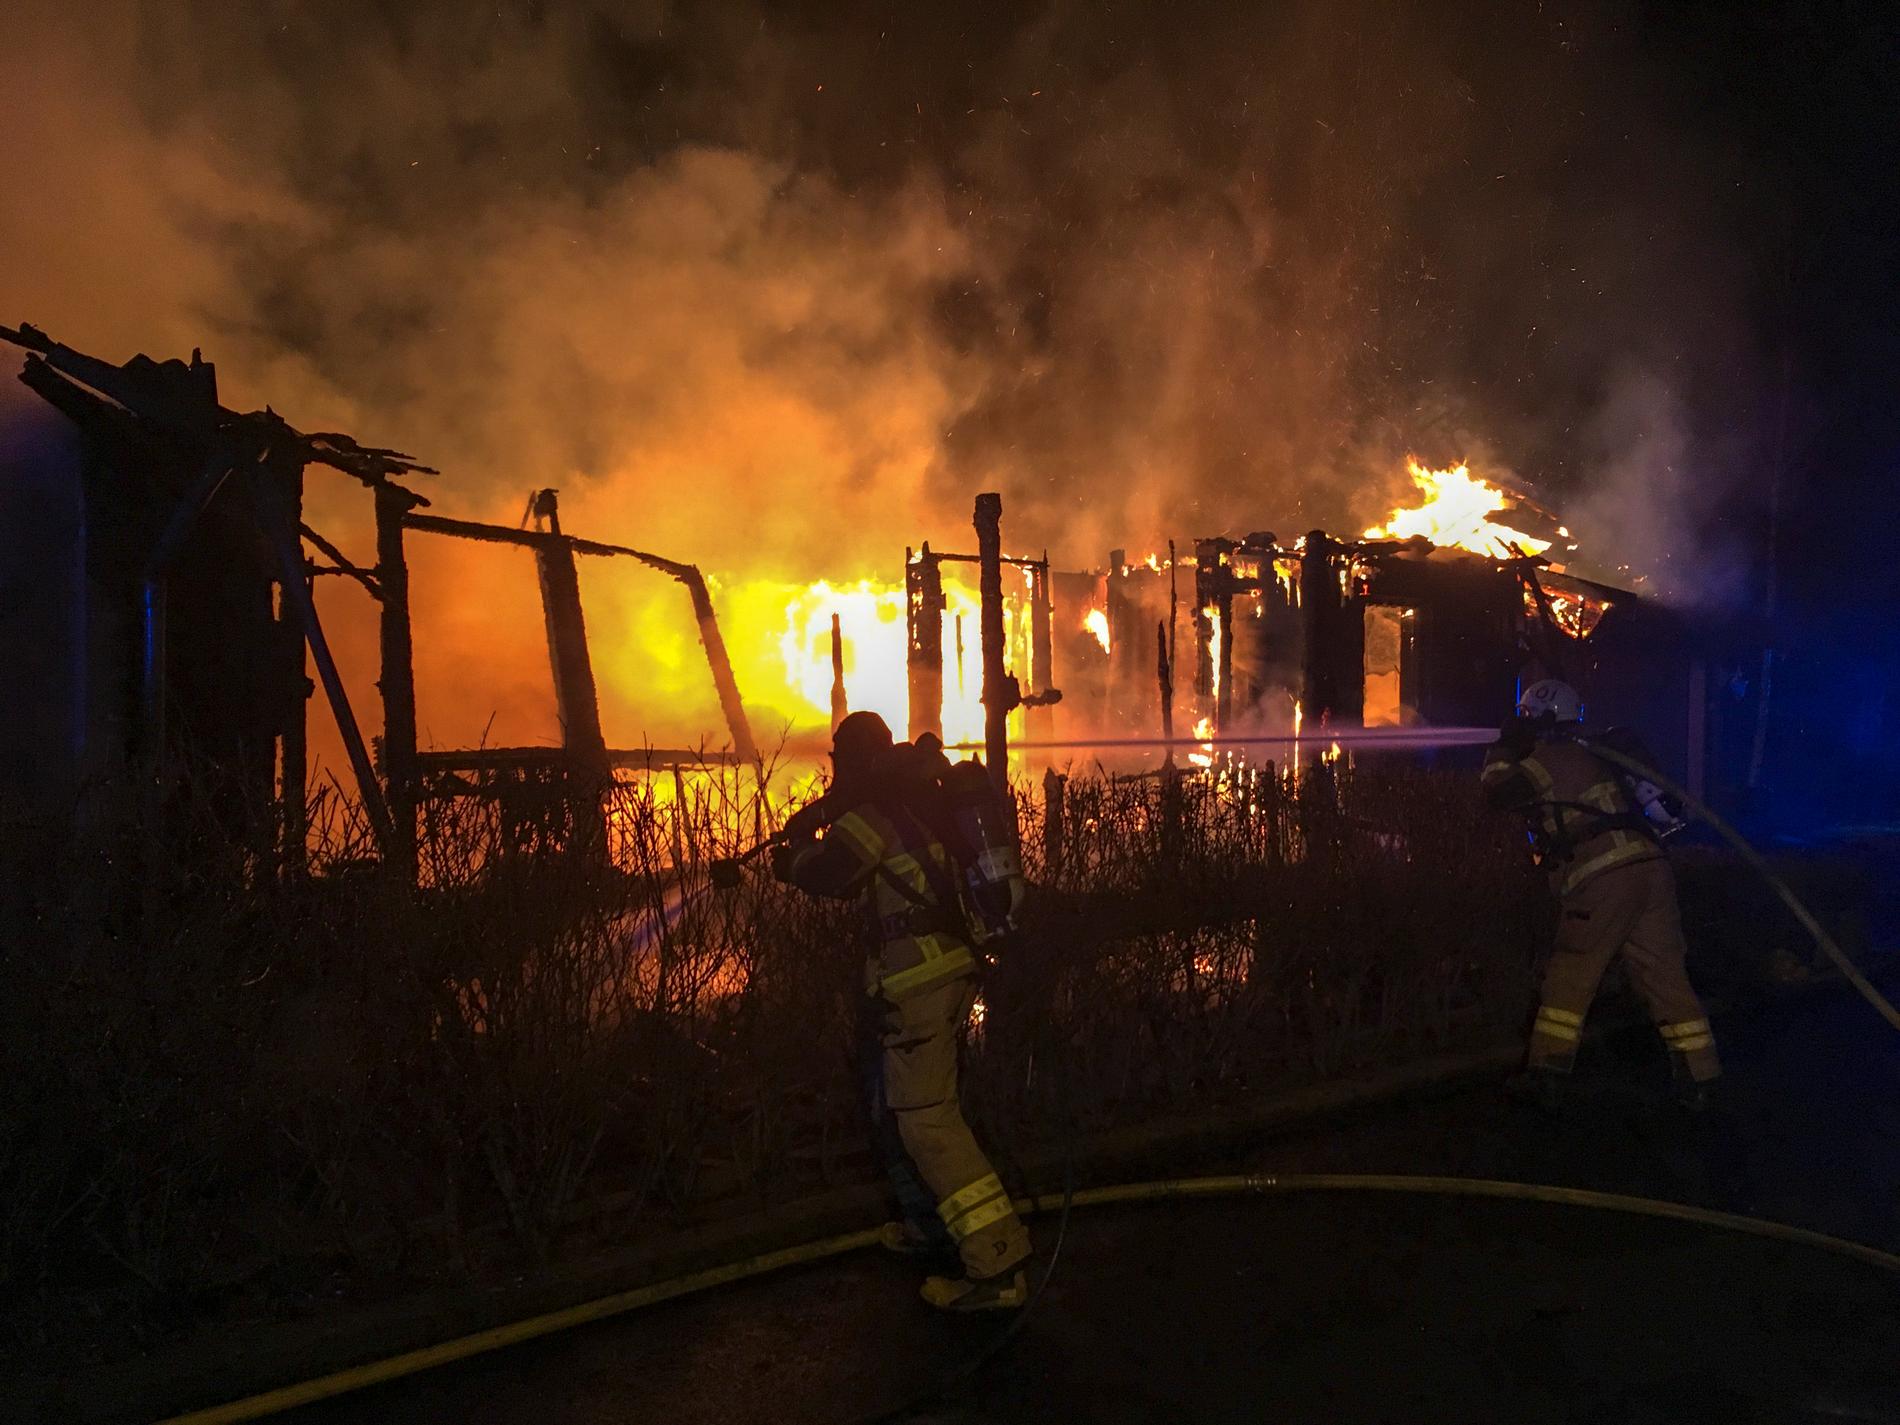 Villan i Härryda blev helt förstörd av branden i december. Mannen som bodde där räddades genom en modig insats av tre unga personer som tog sig in i huset.